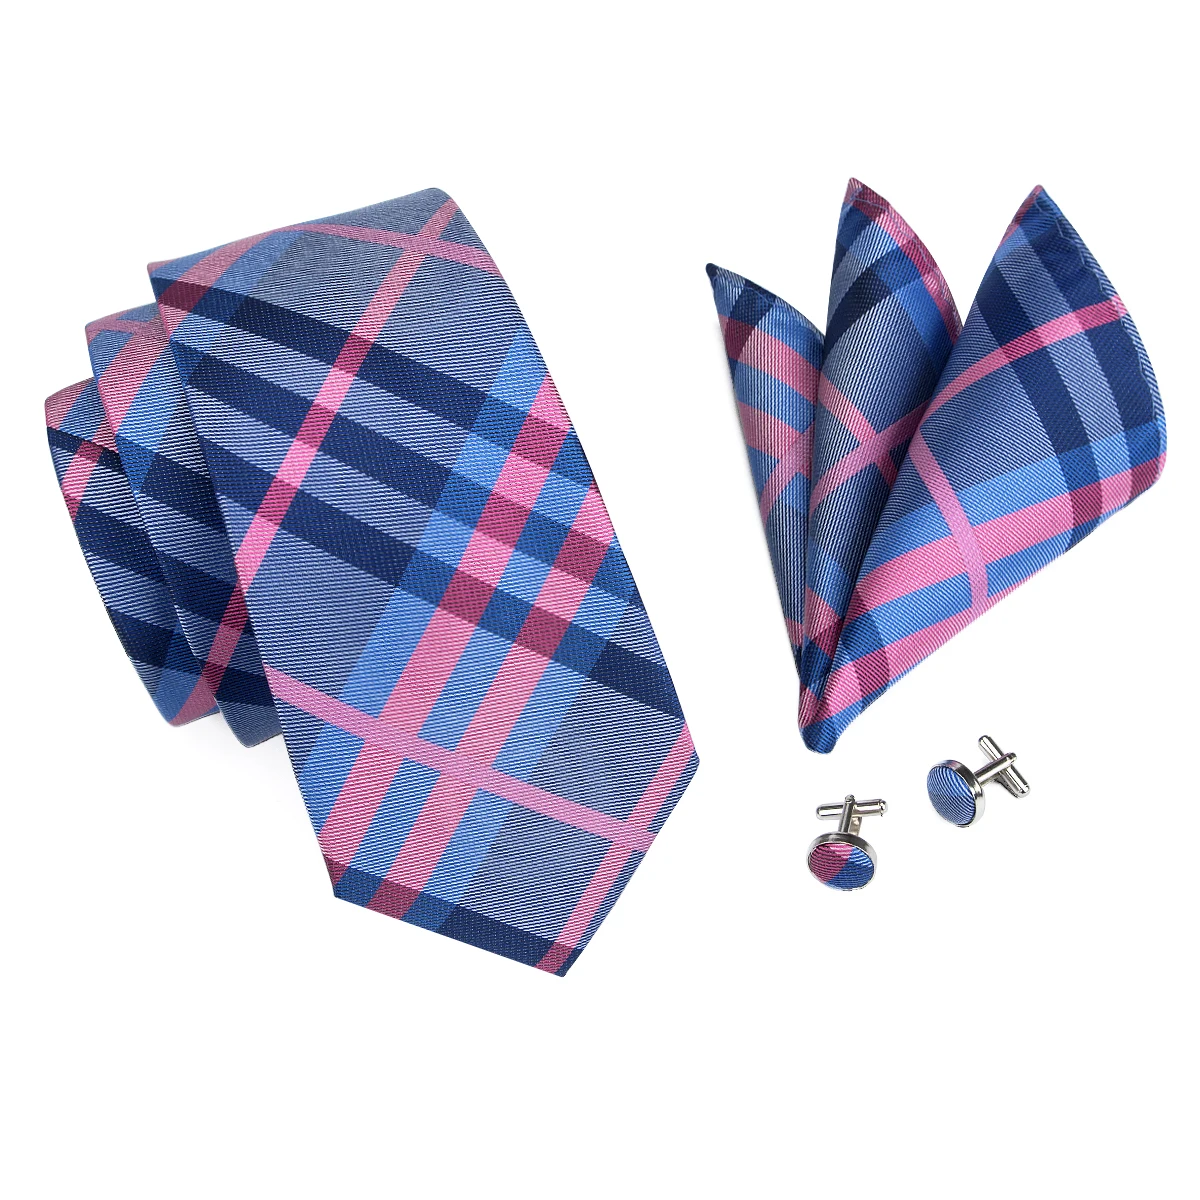 Hi-Tie галстук носовой платок запонки набор для мужчин различные узоры модный стиль Галстуки Gravatas коробка набор